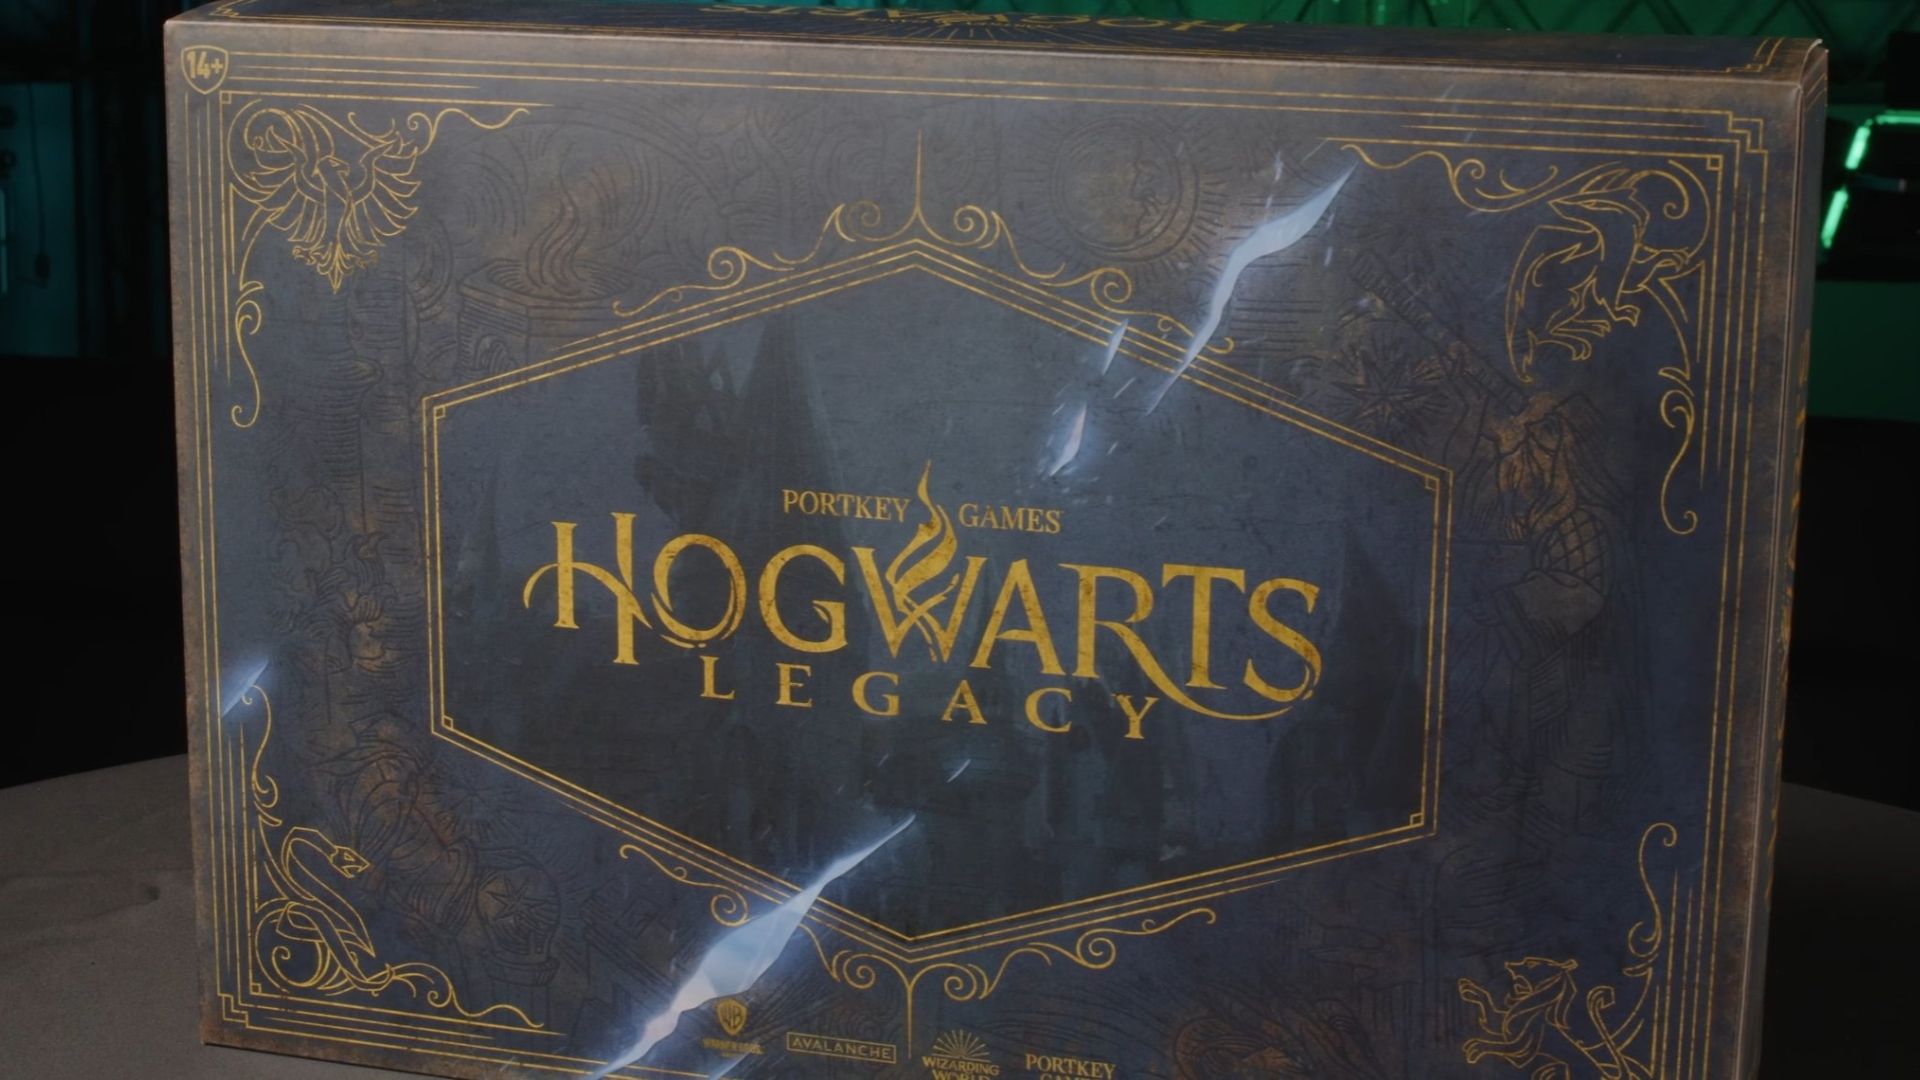 Показали коллекционное издание Hogwarts Legacy - оно выглядит впечатляюще